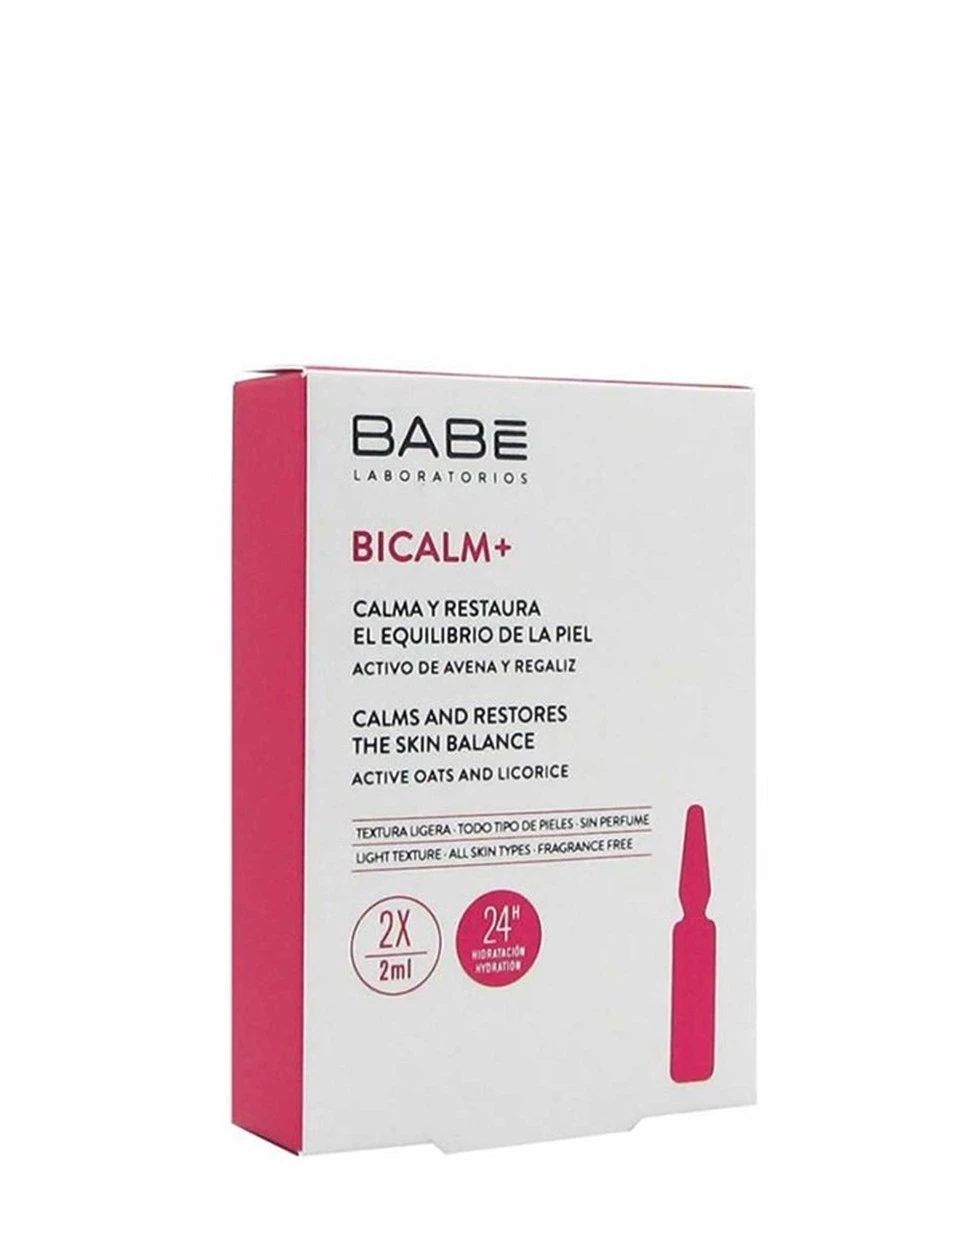 Babe Bicalm+ Ampul Yatıştırıcı Konsantre Bakım 2x2 ml